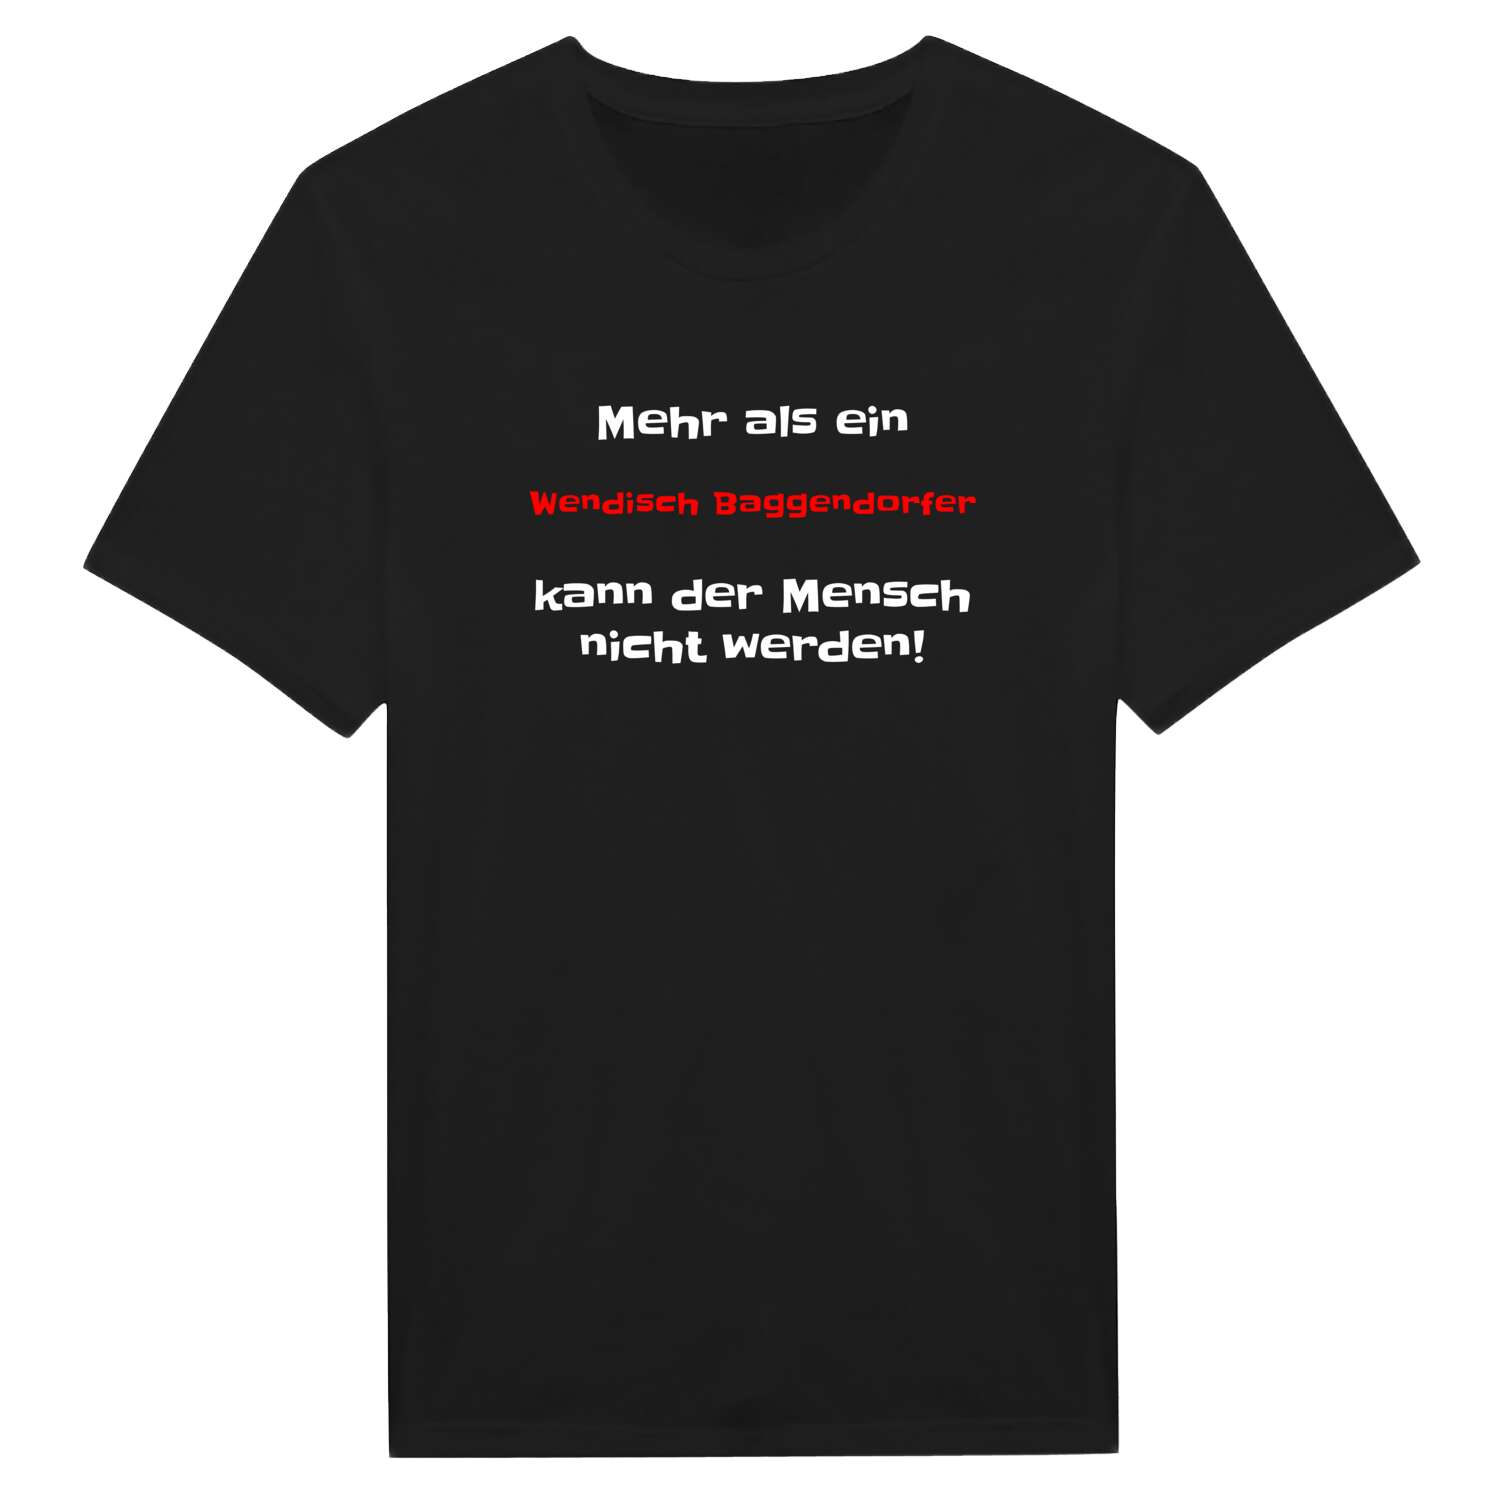 Wendisch Baggendorf T-Shirt »Mehr als ein«